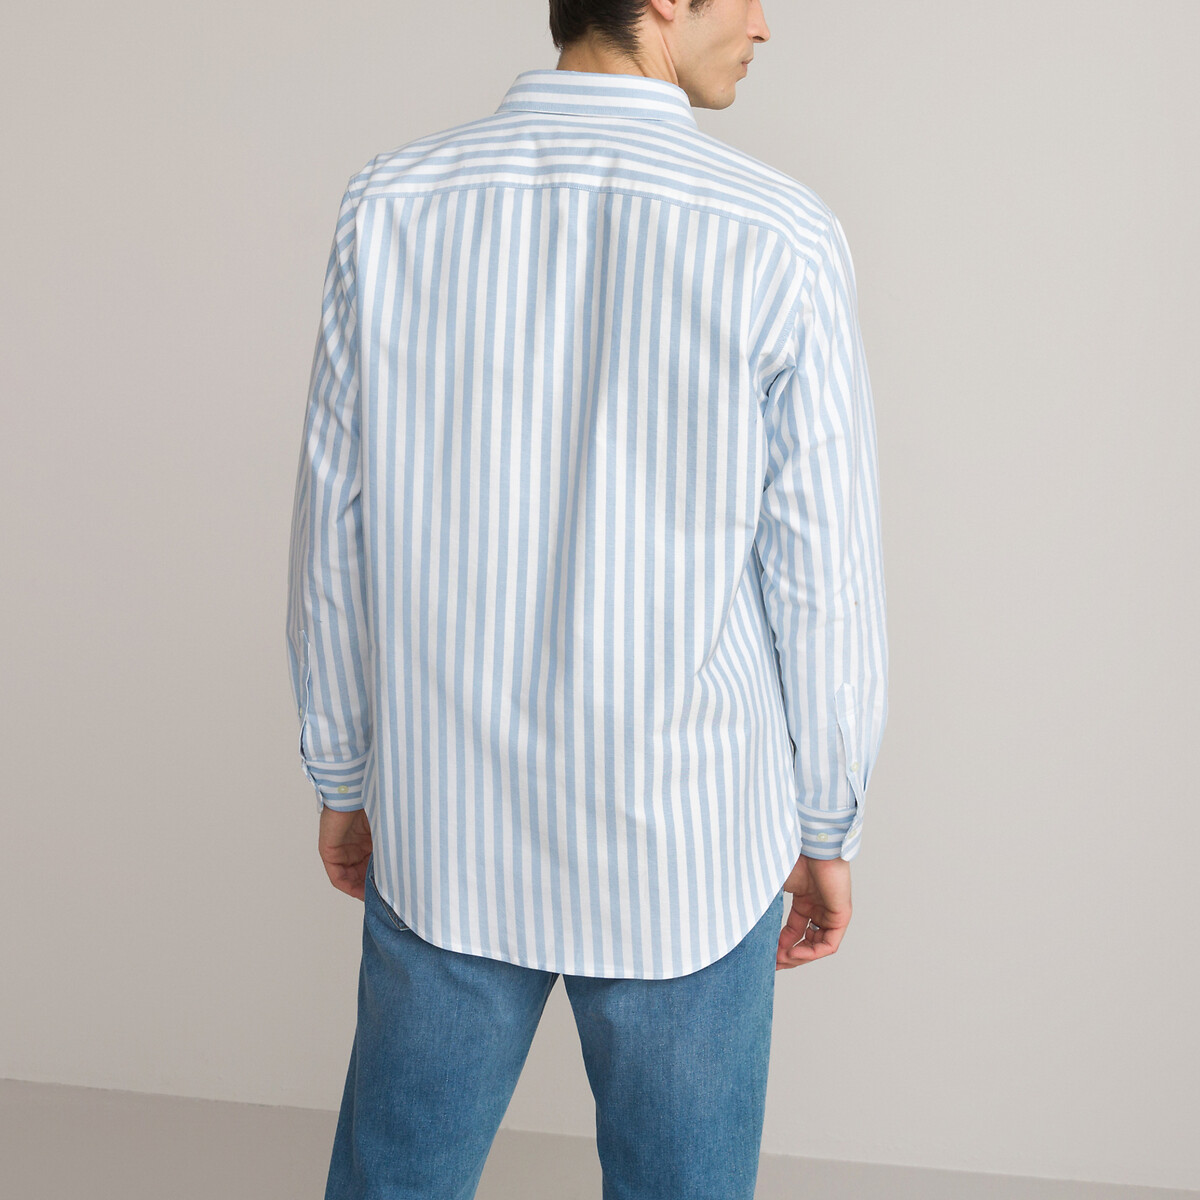 Рубашка Из ткани оксфорд прямого покроя с французским воротником 37/38 синий LaRedoute, размер 37/38 Рубашка Из ткани оксфорд прямого покроя с французским воротником 37/38 синий - фото 4